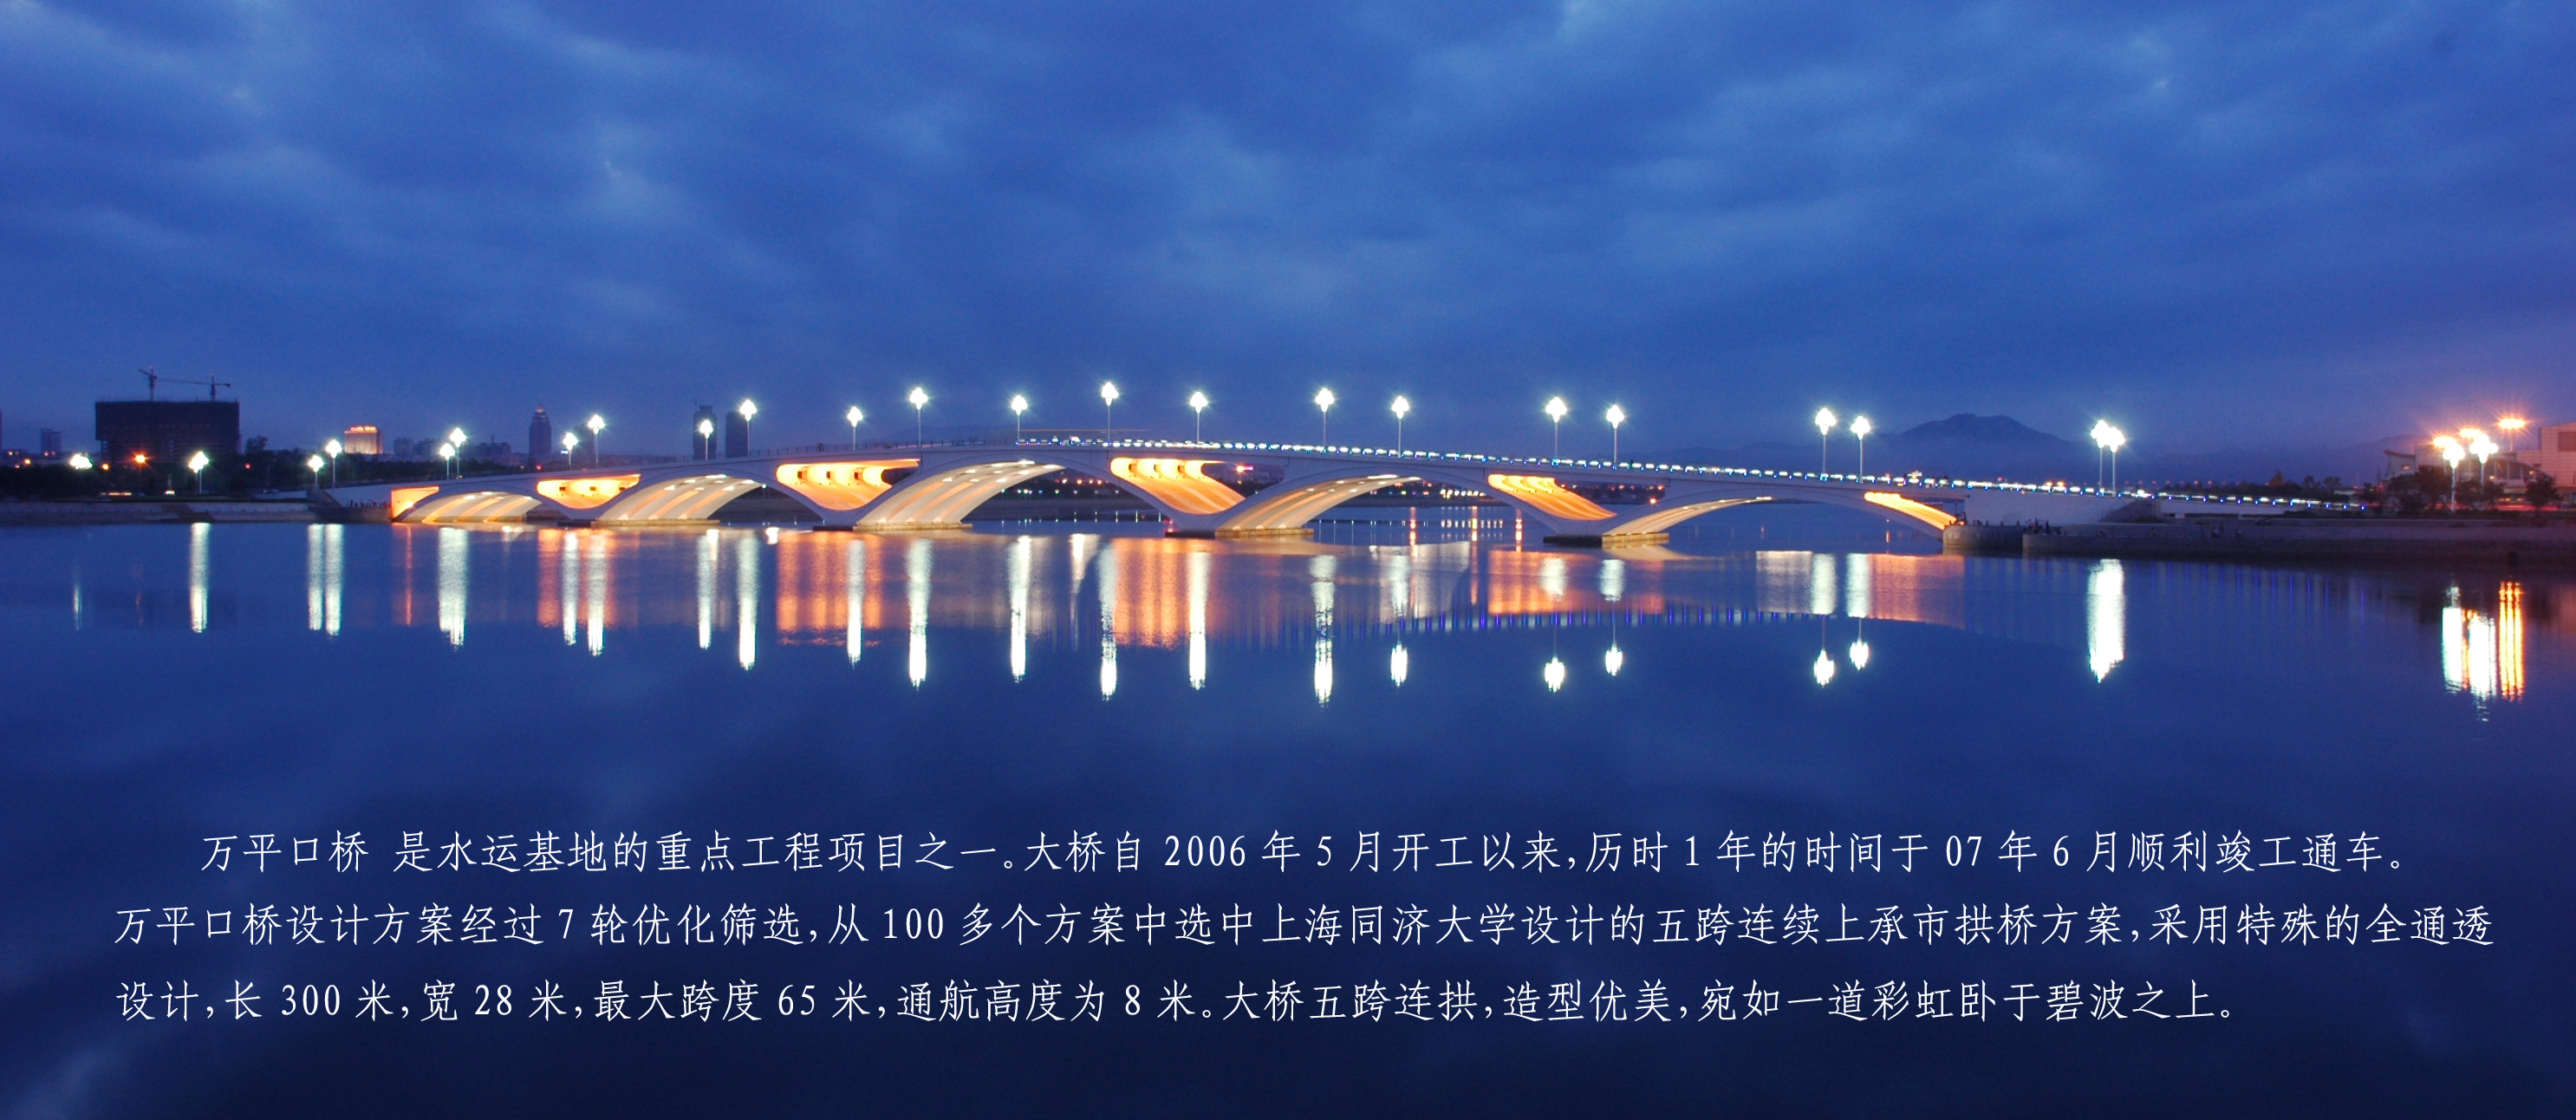 万平口大桥.jpg